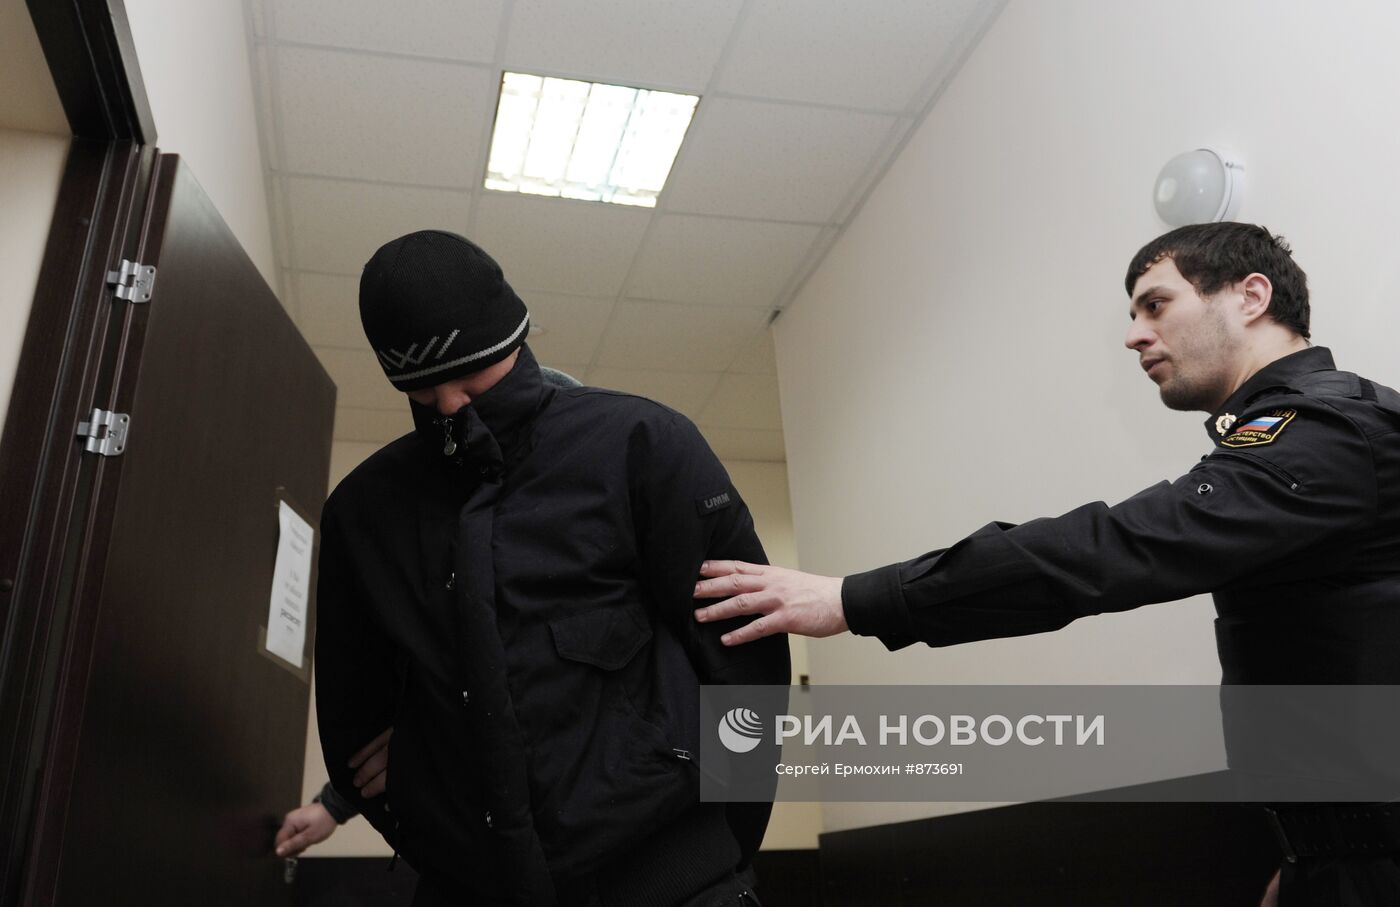 Арест бывшего лейтенанта МЧС Юрия Жидкова в Санкт-Петербурге